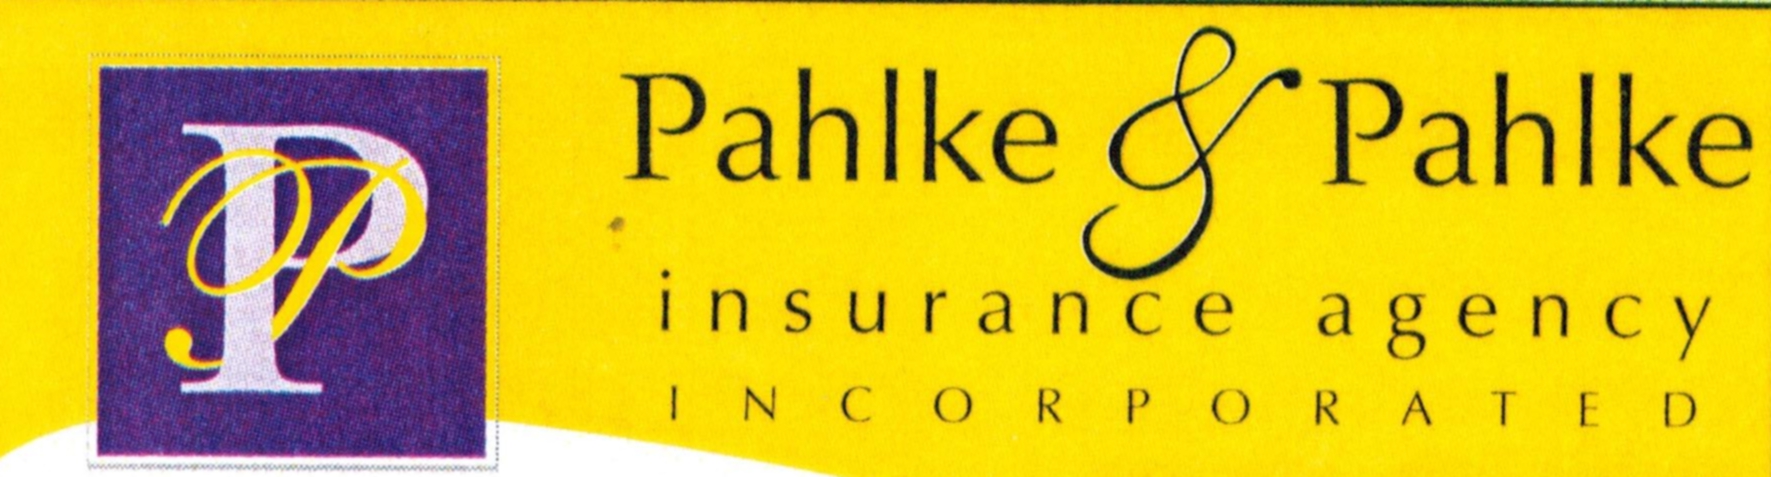 Pahlke & Pahlke Insurance